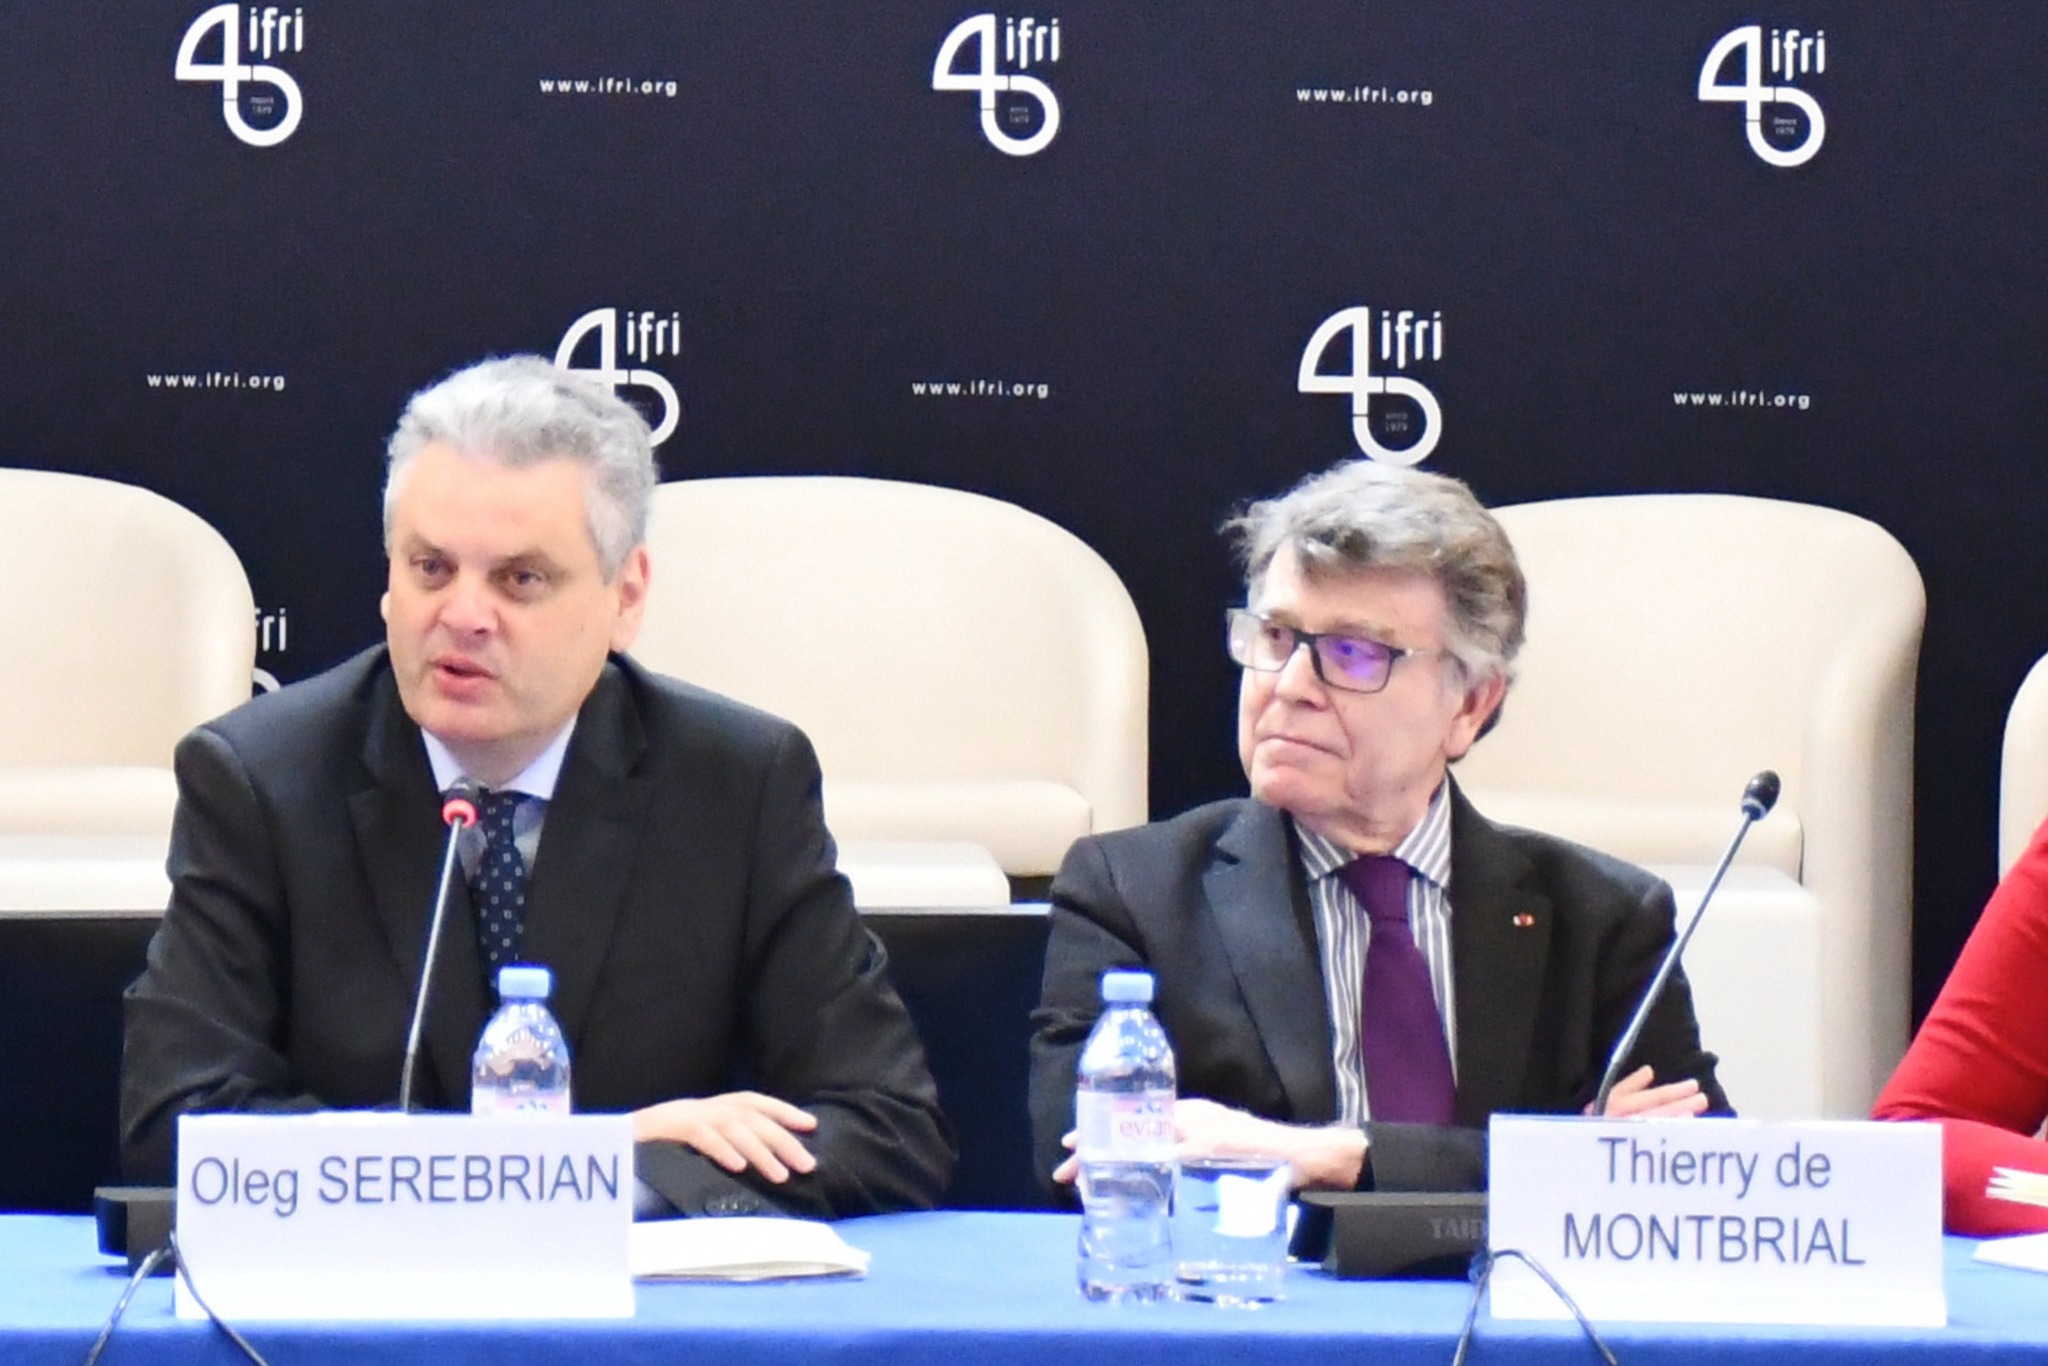 Oleg Serebrian, vizită în Franța. A discutat despre dosarul transnistrean la Institutul Francez de Relații Internaționale